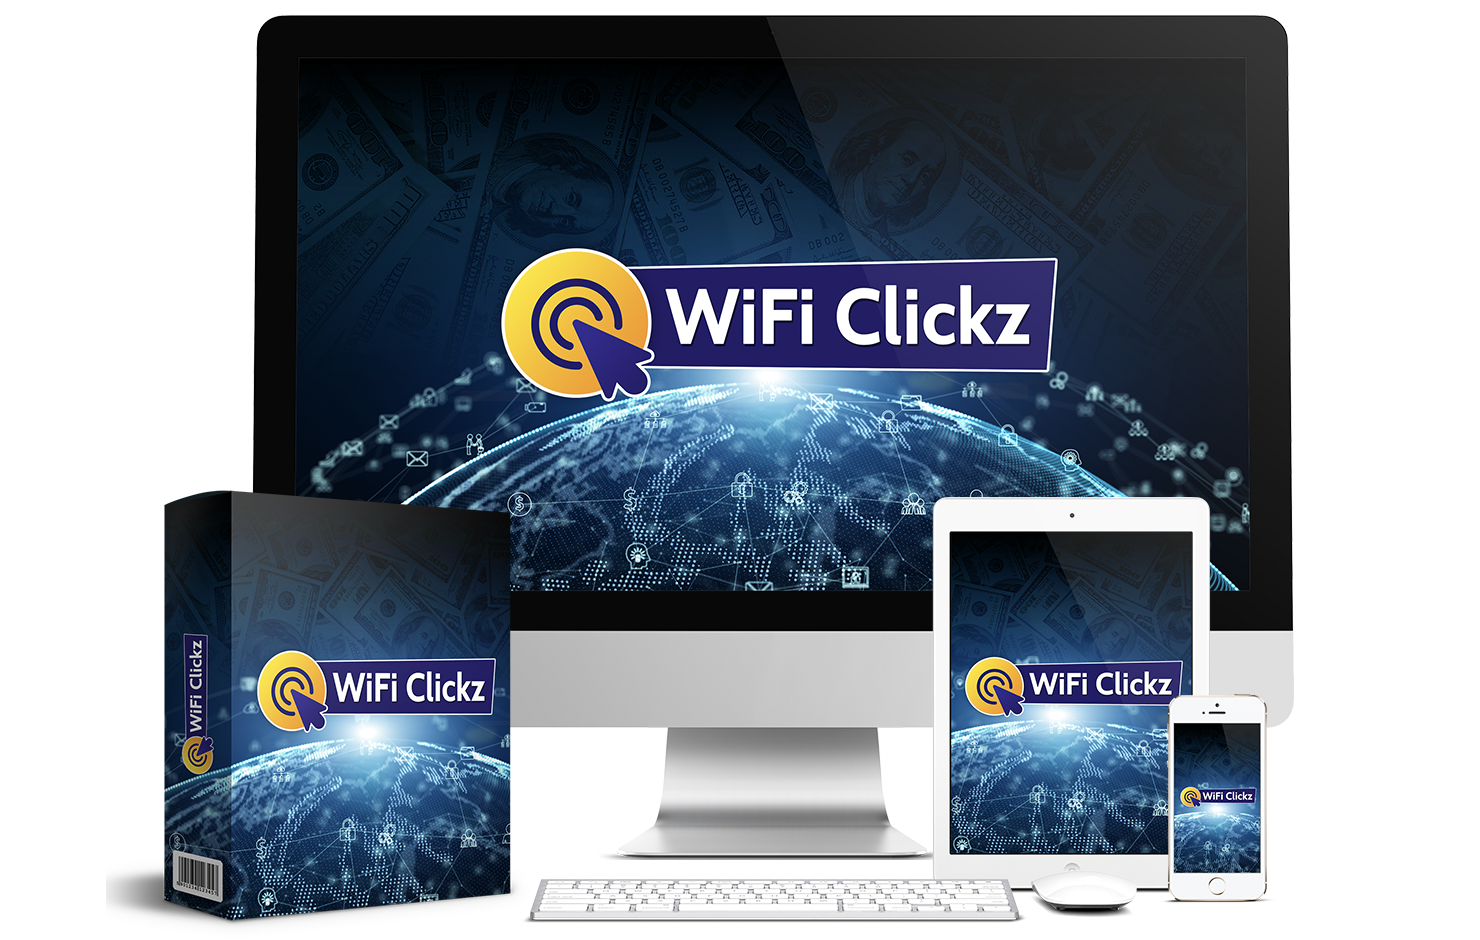 WiFi Clickz